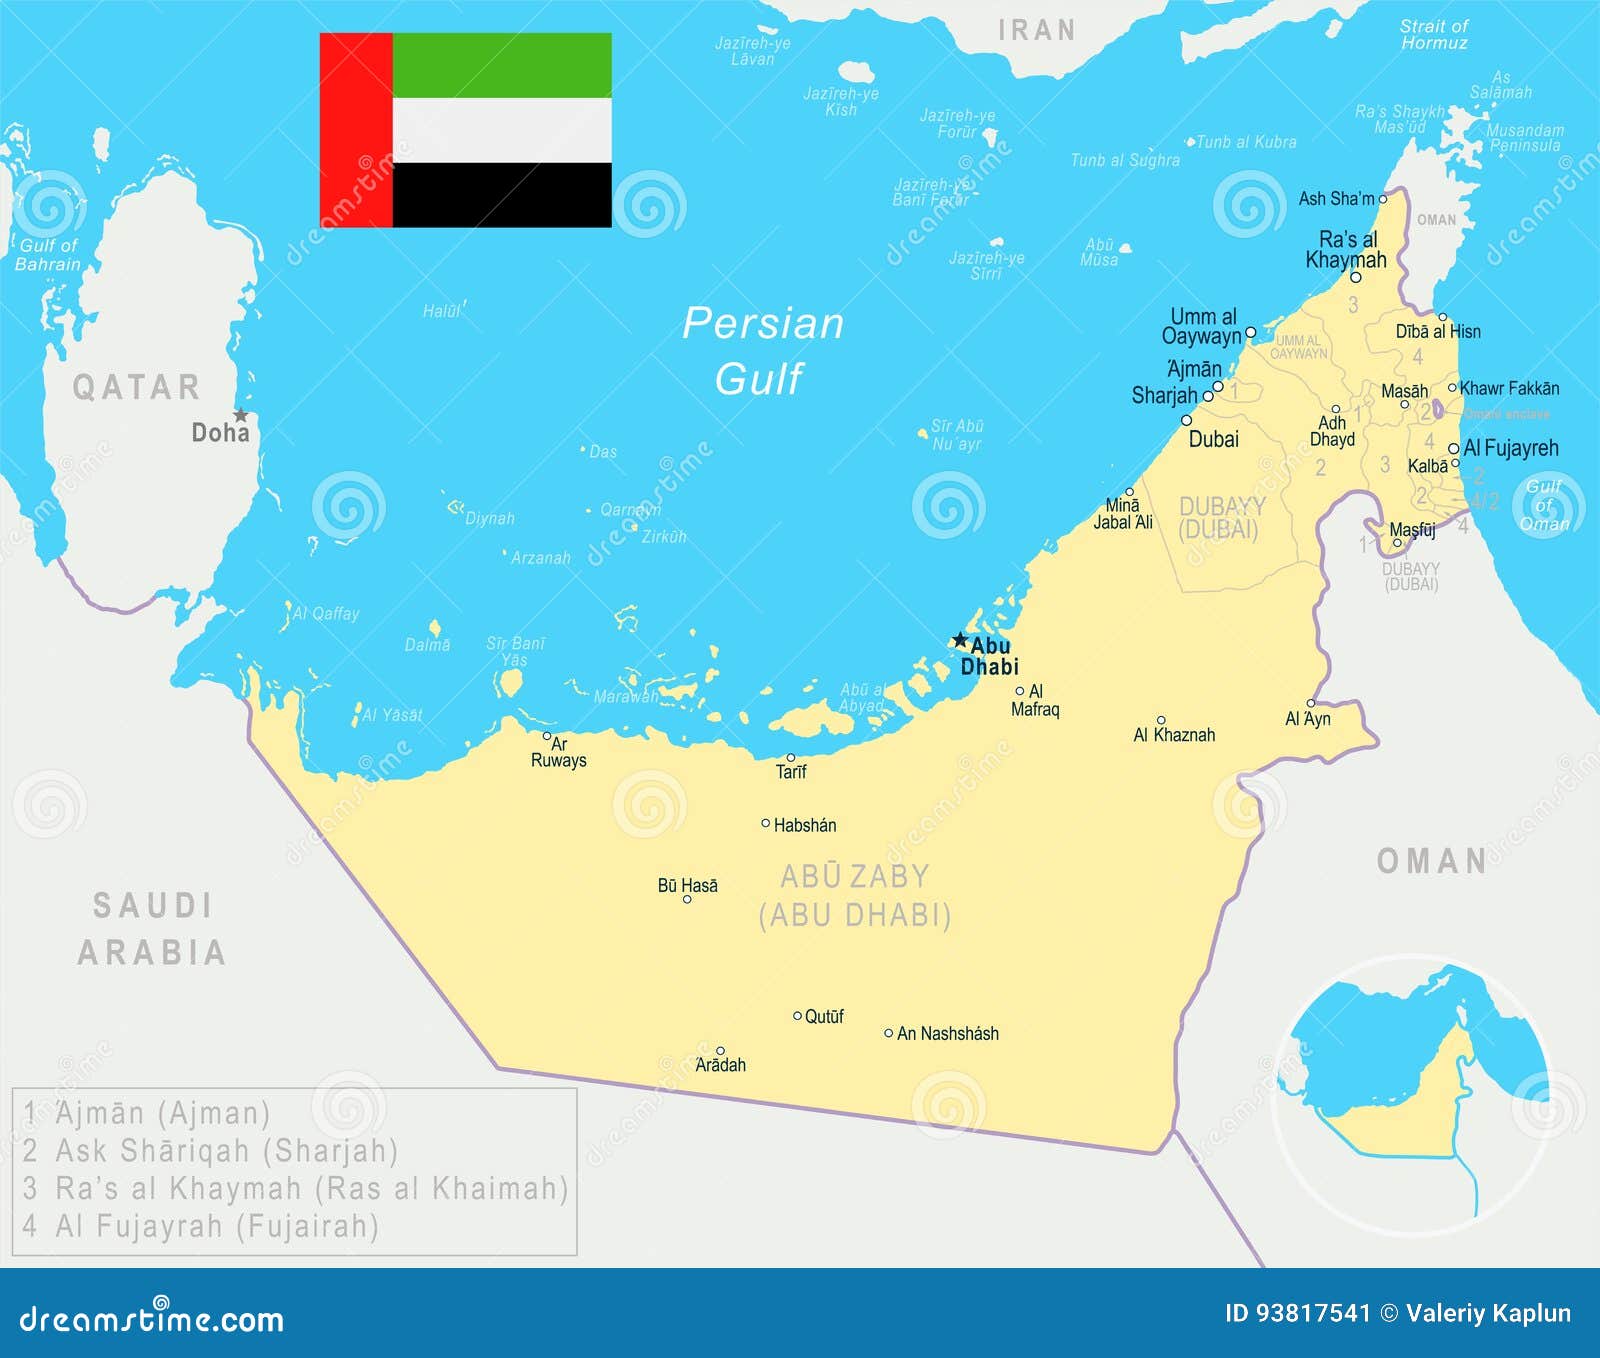 Объединенные арабские на английском. Объединенные арабские эмираты флаг карта. Объединённые арабские эмираты на карте. Карта ОАЭ С Эмиратами.